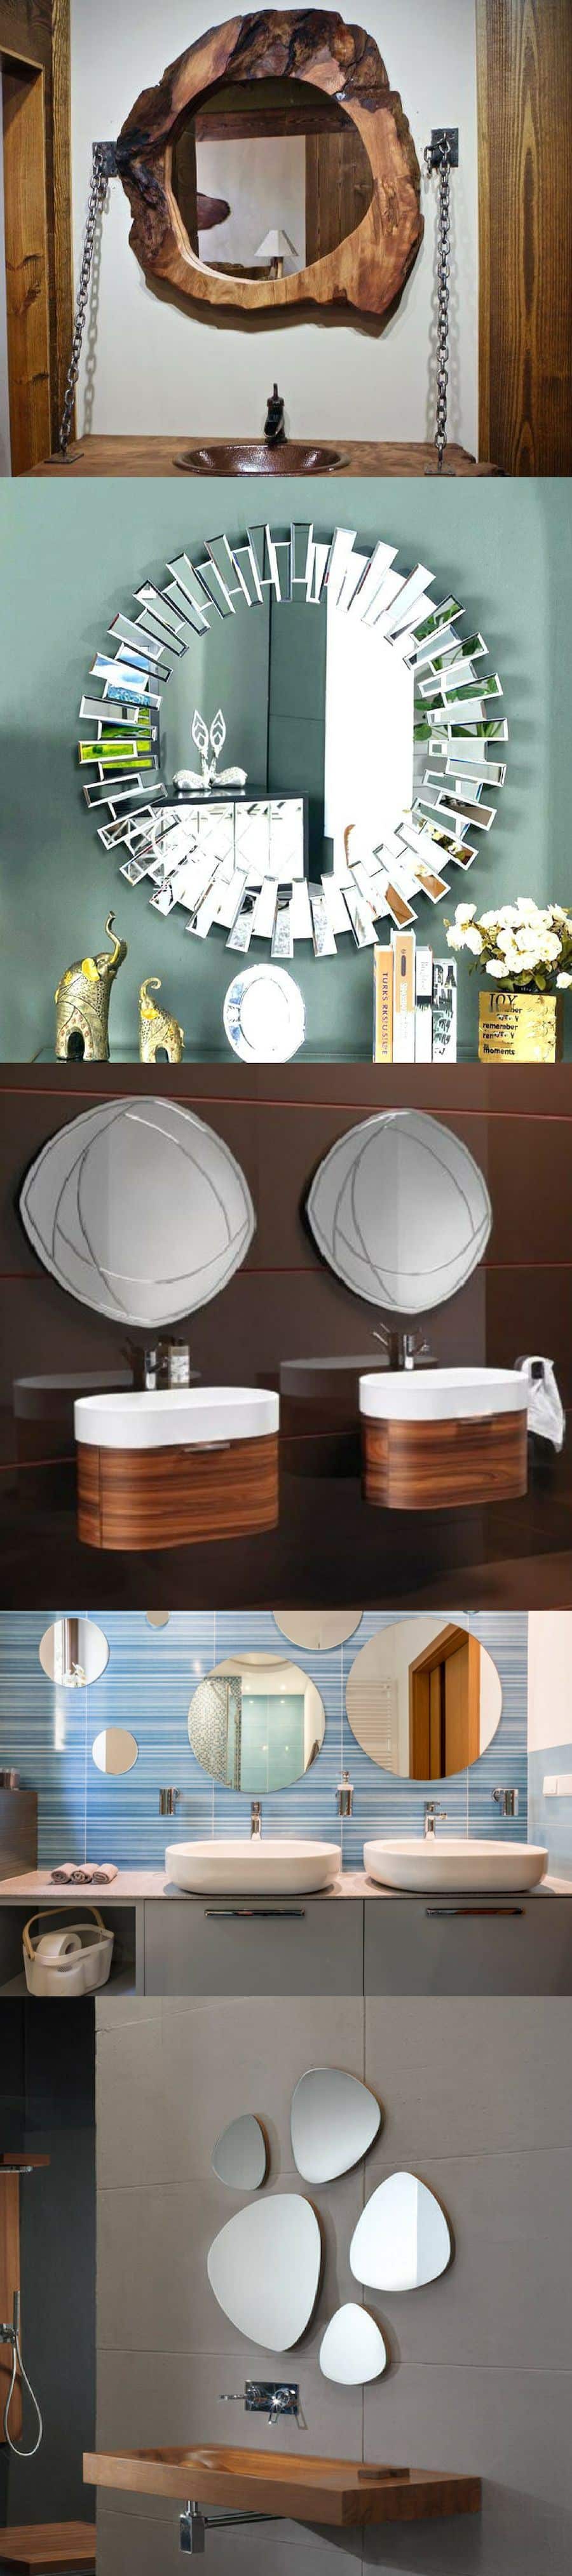 bathroom mirror ideas diy